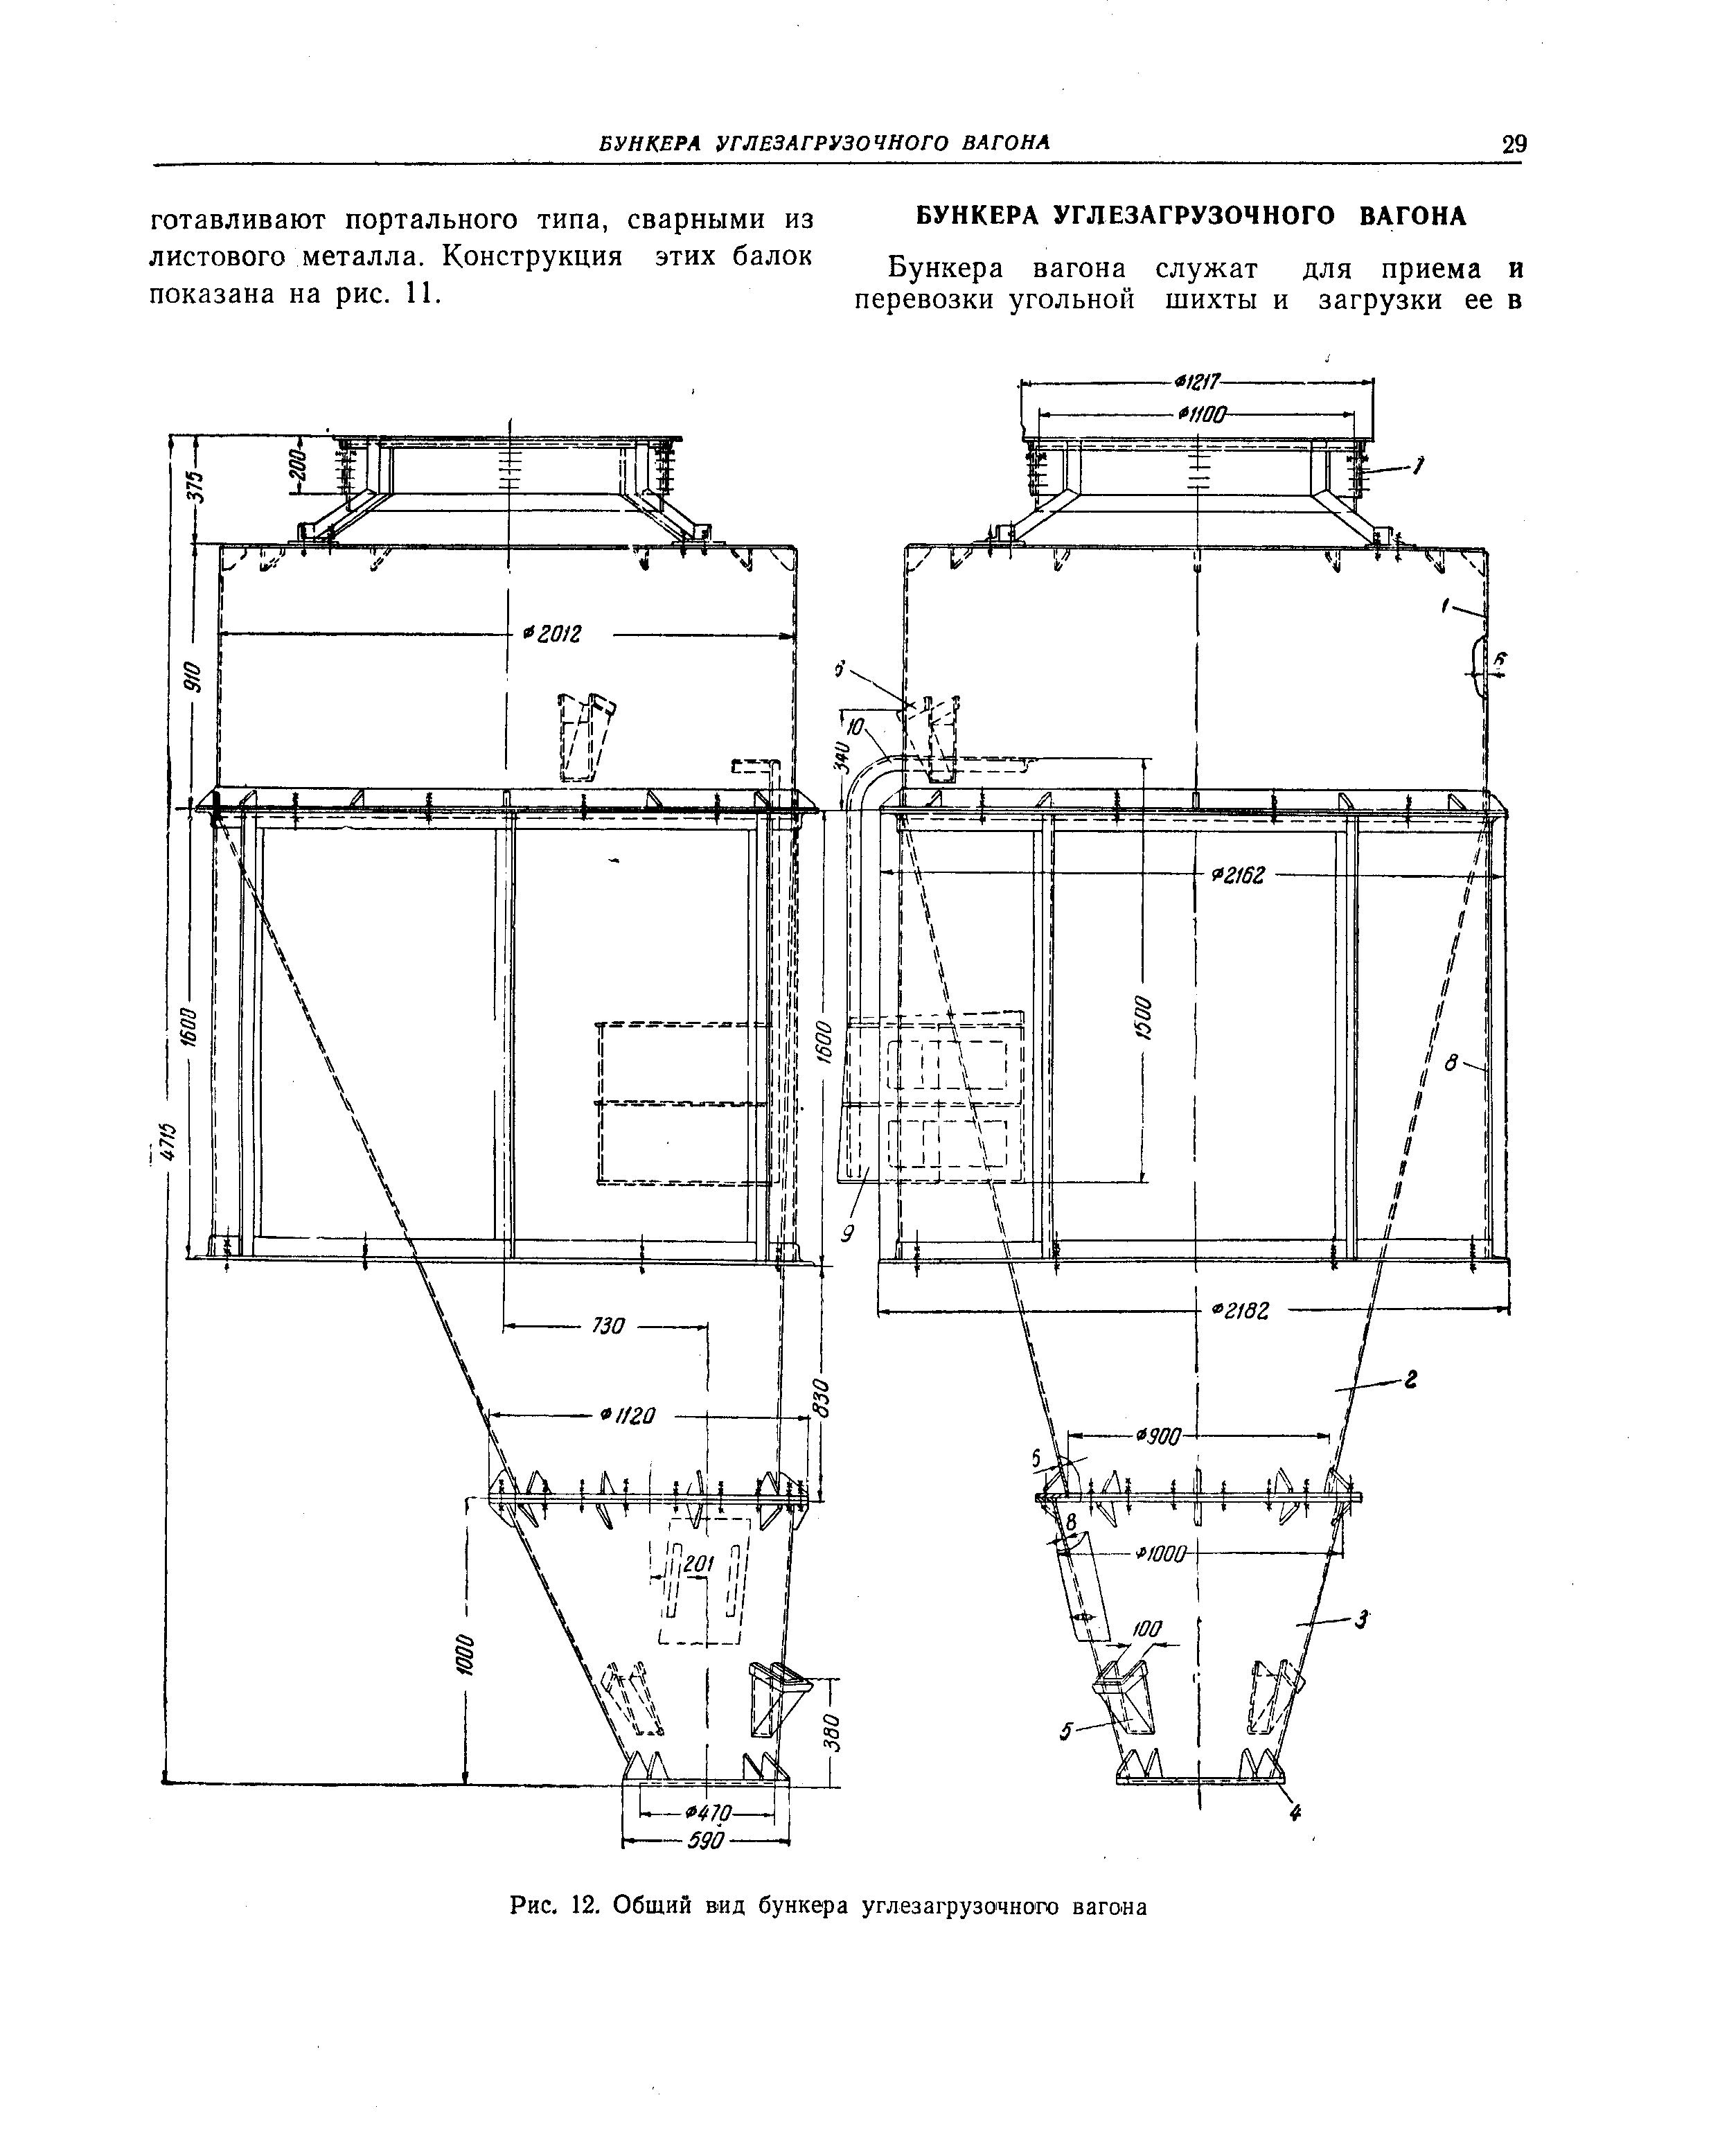 Рис. 12. Общий вид бункера углезагрузочного вагона
